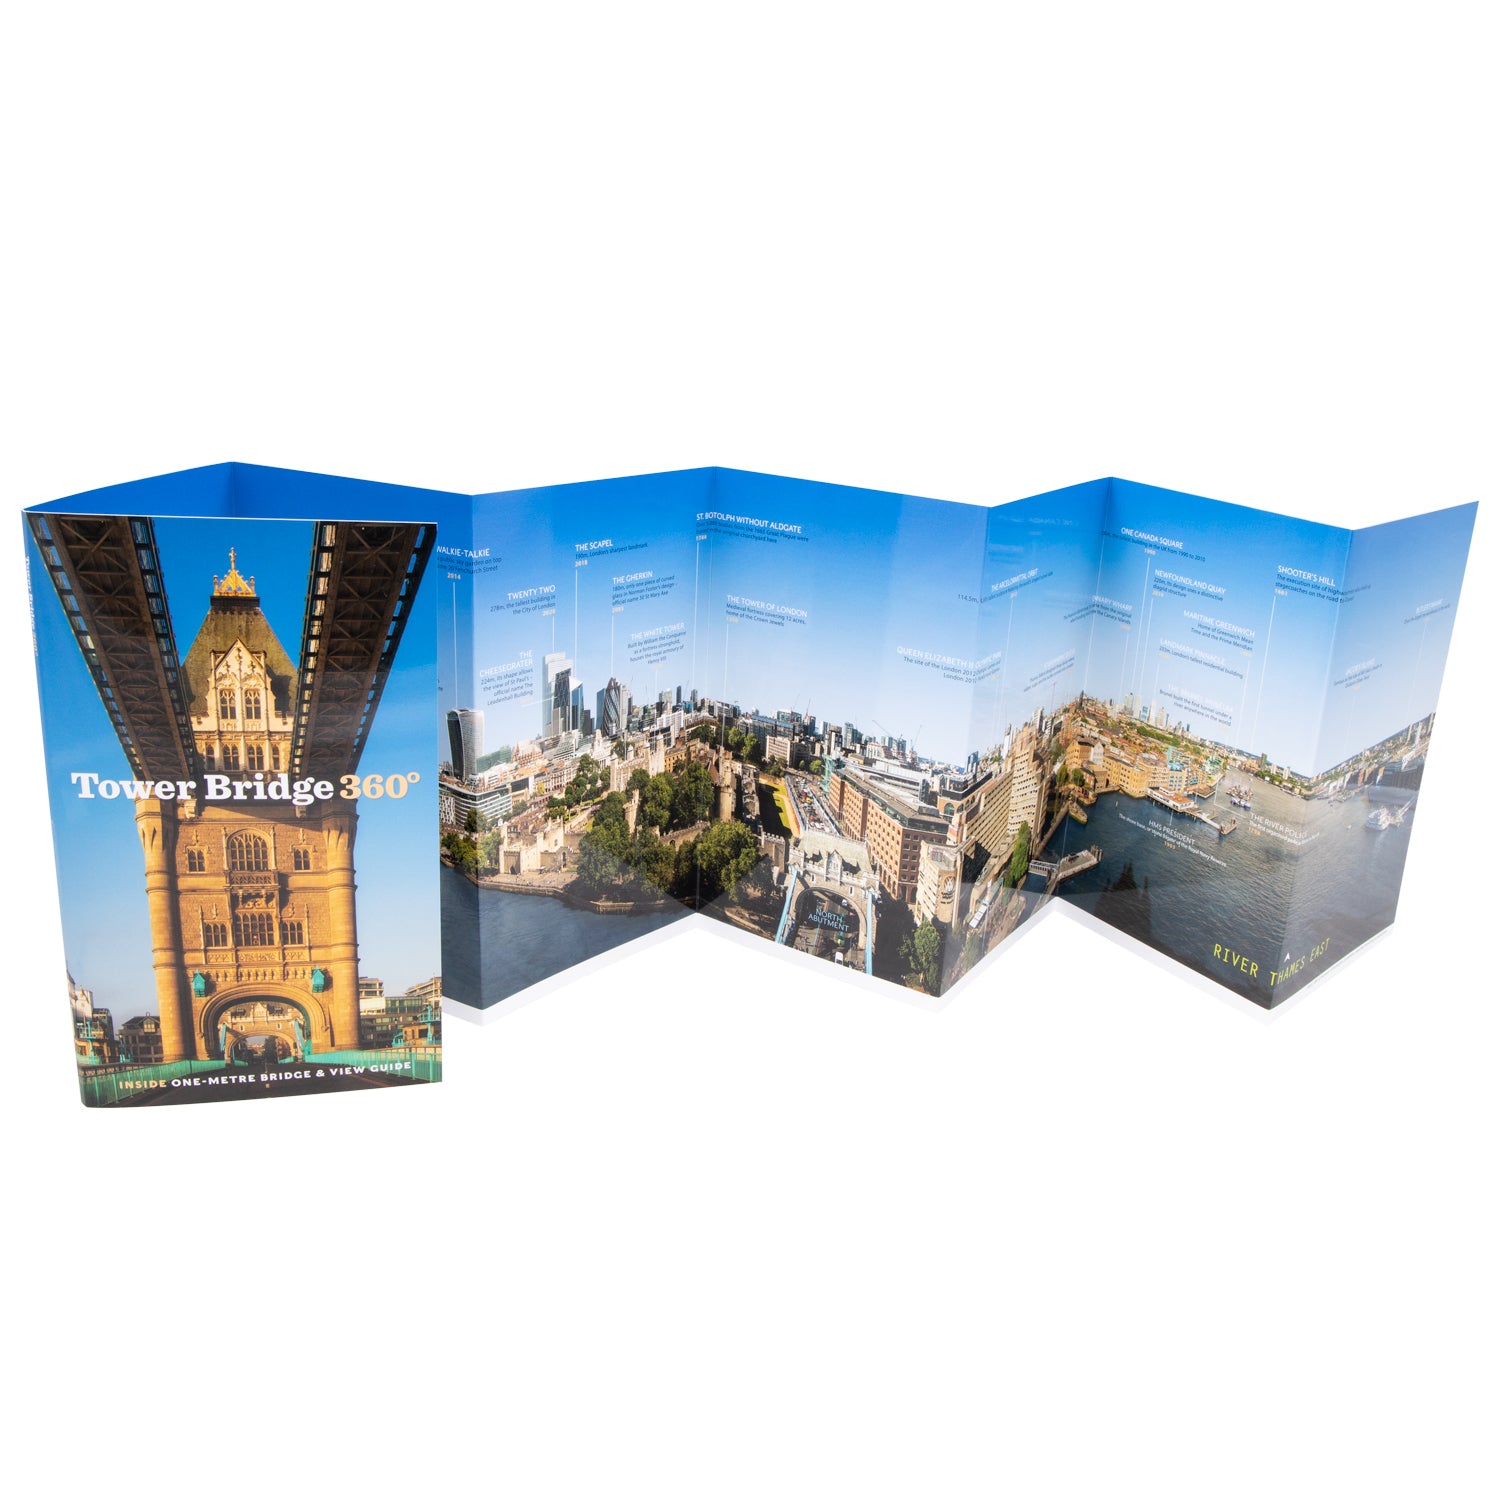 Tower Bridge 360 Panoramic Guide